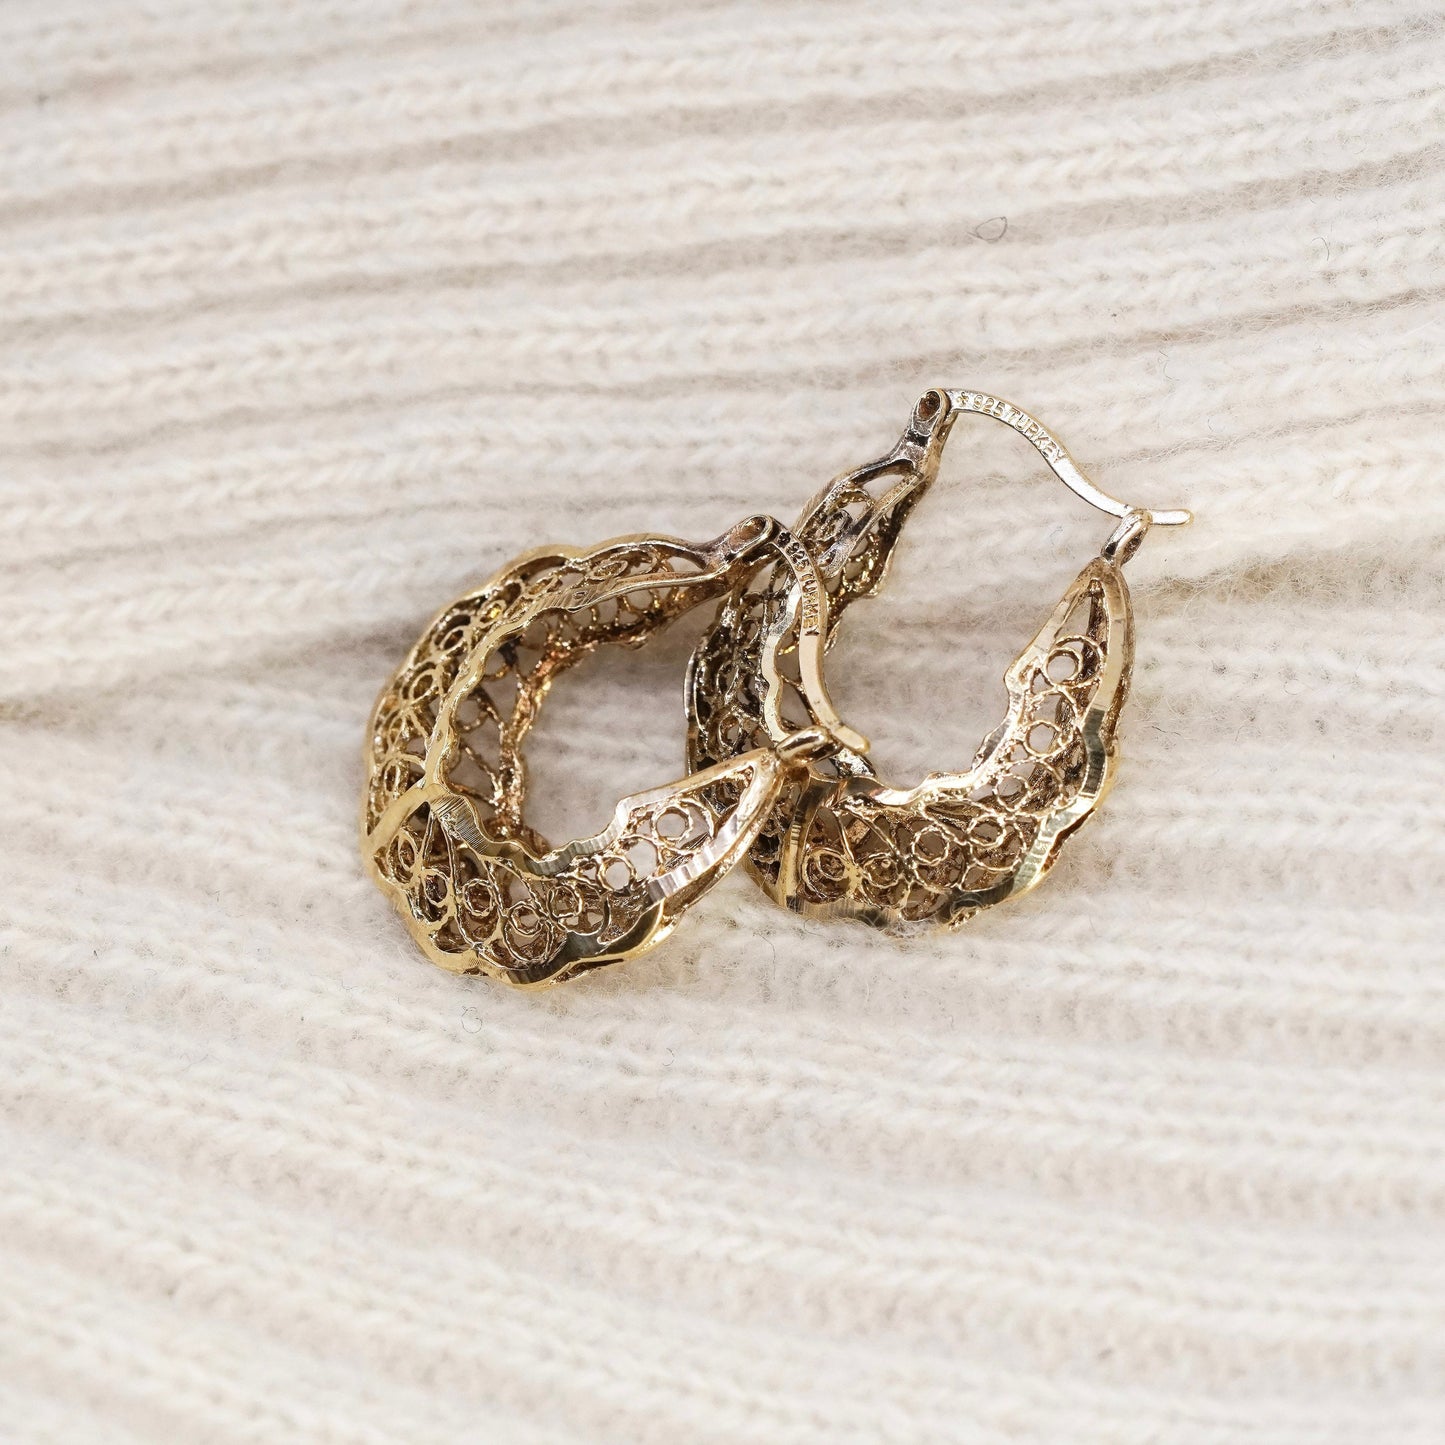 1” turkey vermeil gold over sterling silver filigree earrings, huggie hoops